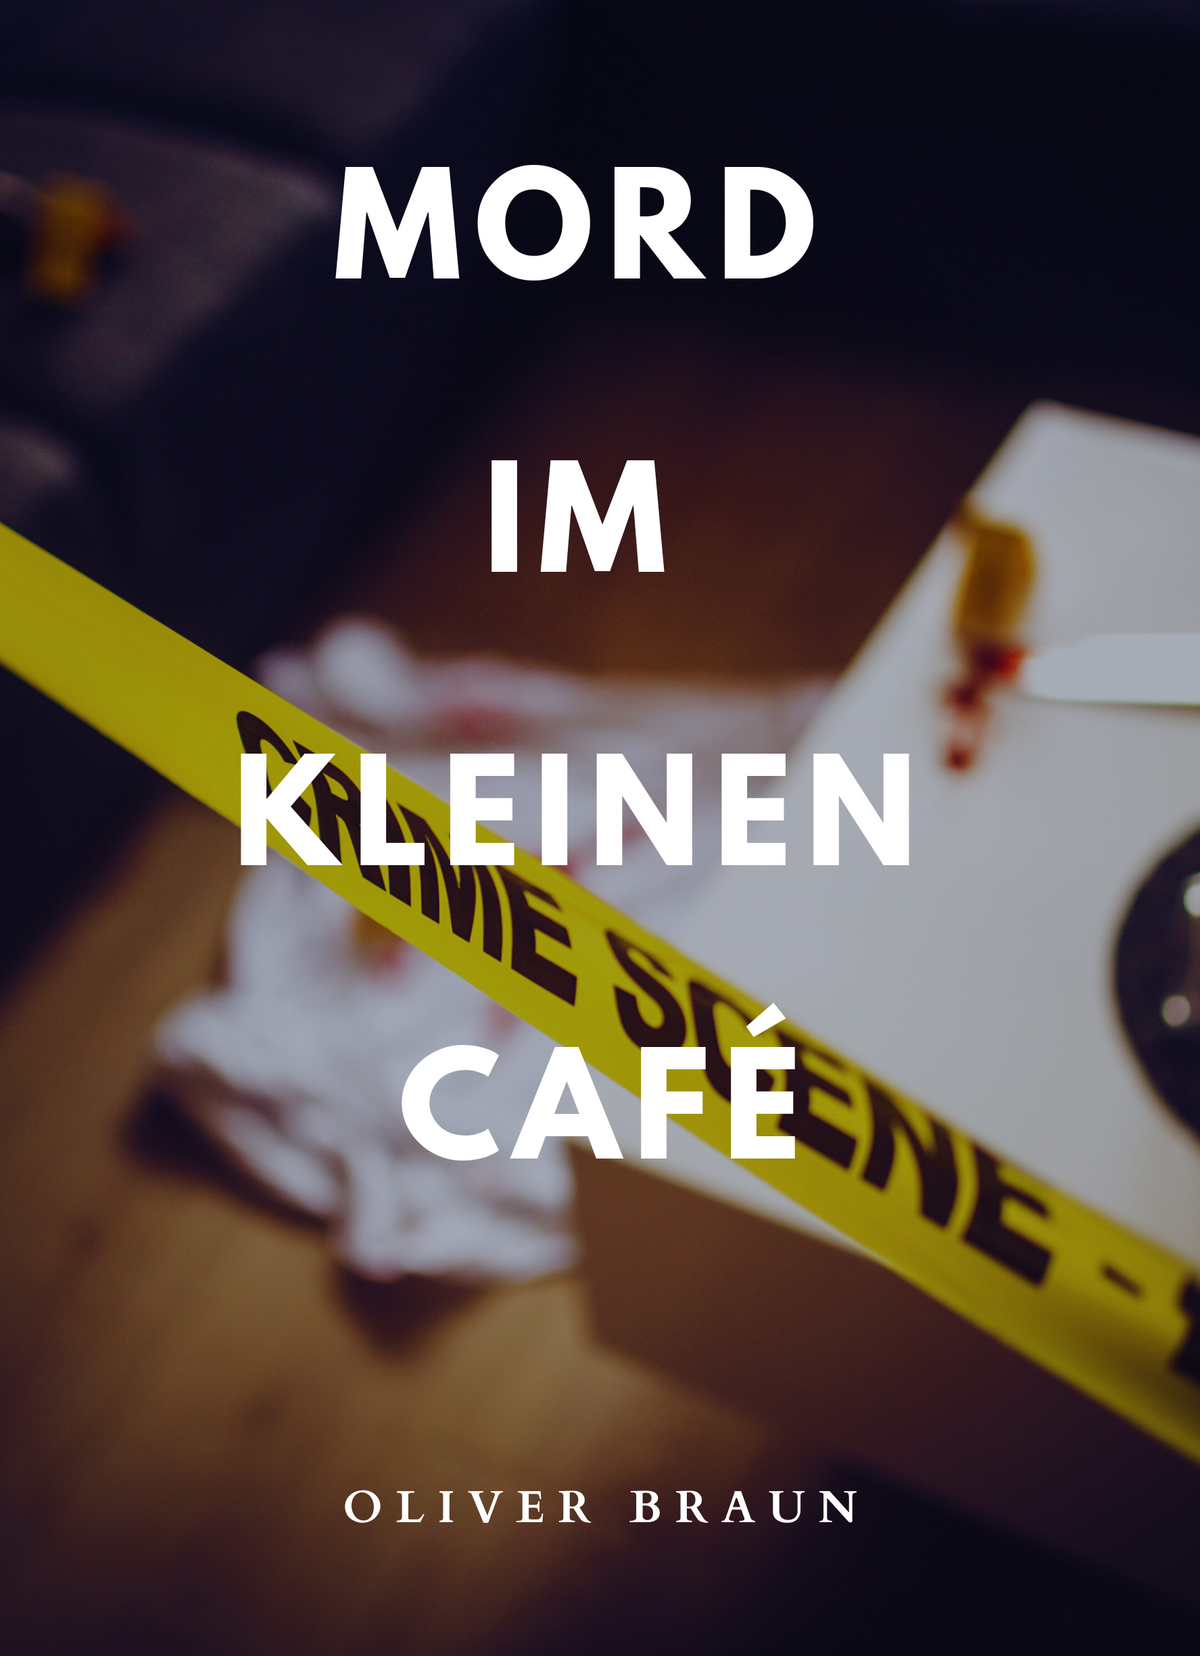 Mord im kleinen Café